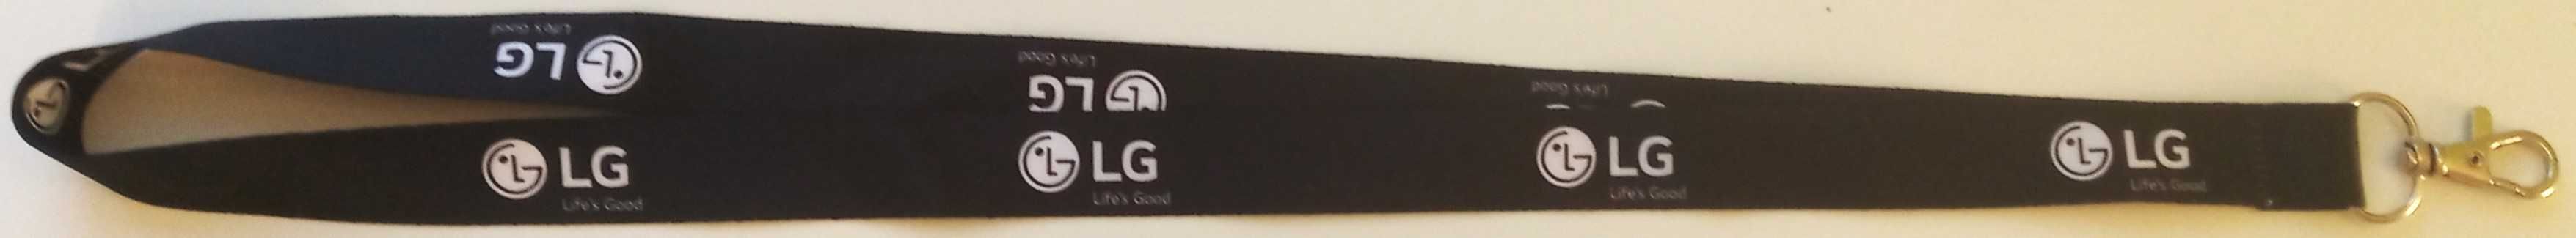 Smycz + karabińczyk czarna LG klucze identyfikator card holder etui